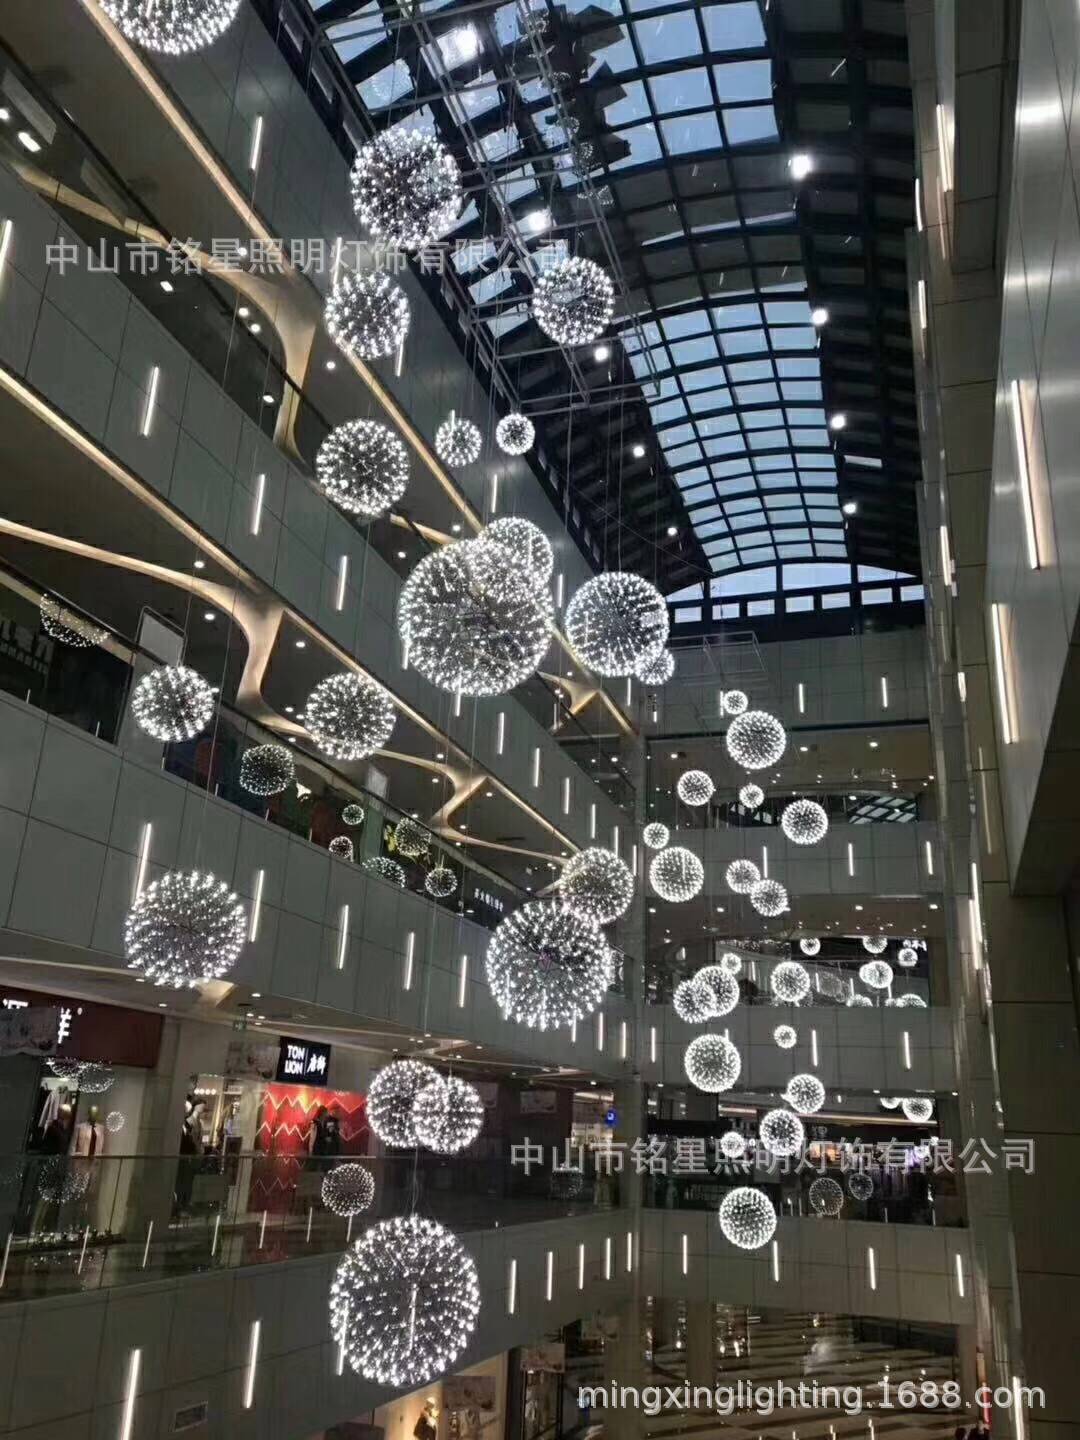 【中庭吊饰】不锈钢蒲公英圆球灯商场中庭装饰满天星LED球型吊灯示例图5